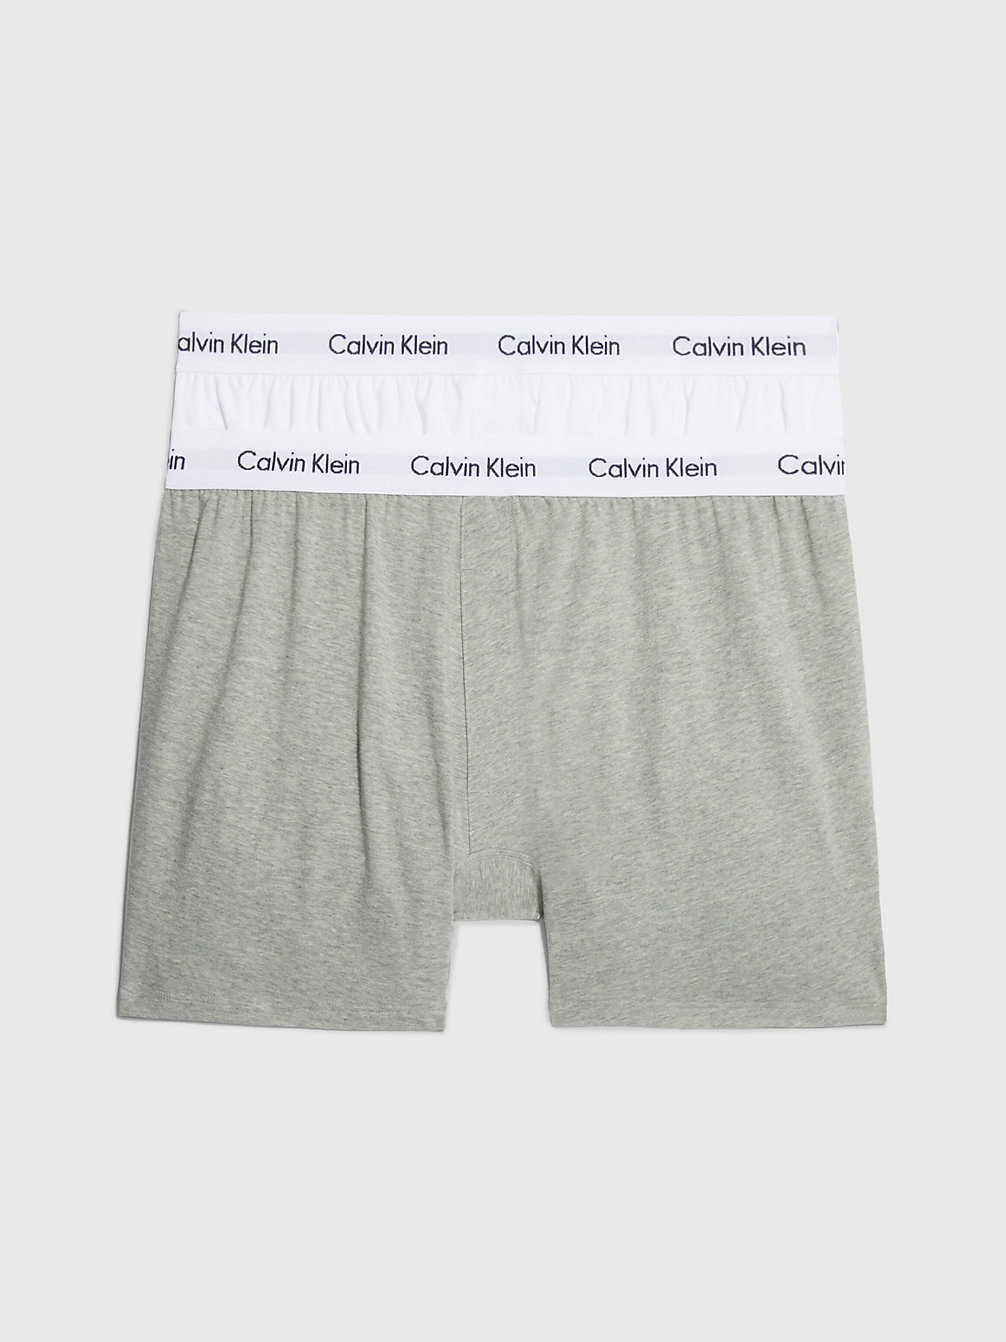 WHITE, GREY HEATHER > 2 Pack Boxers - Cotton Stretch > undefined женщины - Calvin Klein